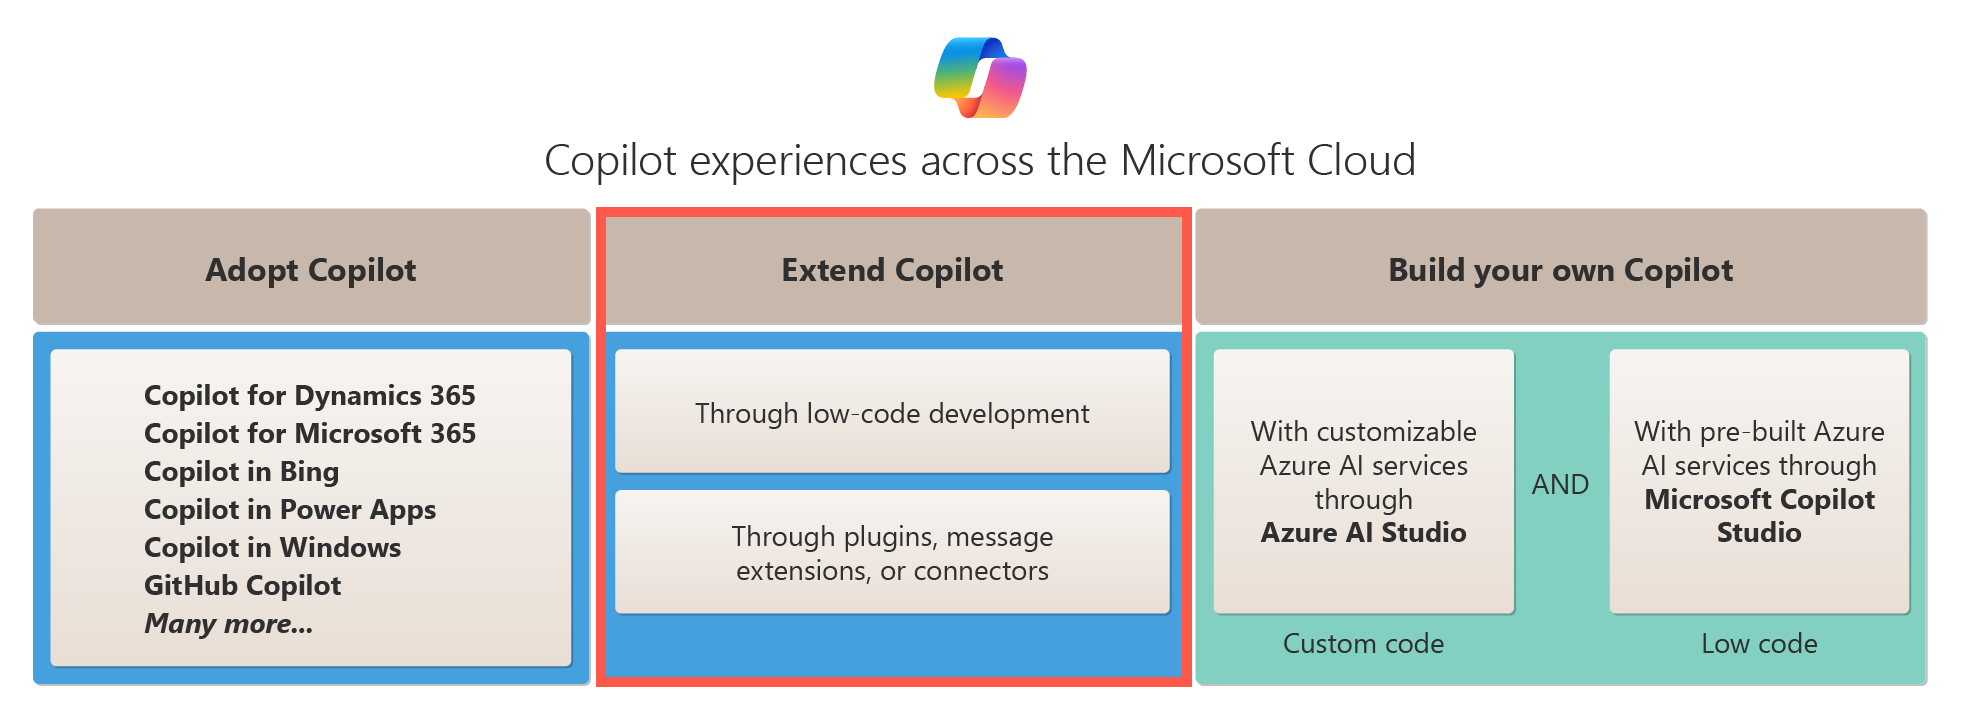 Diagram znázorňující rozšíření možností pro Copilot v microsoft cloudu